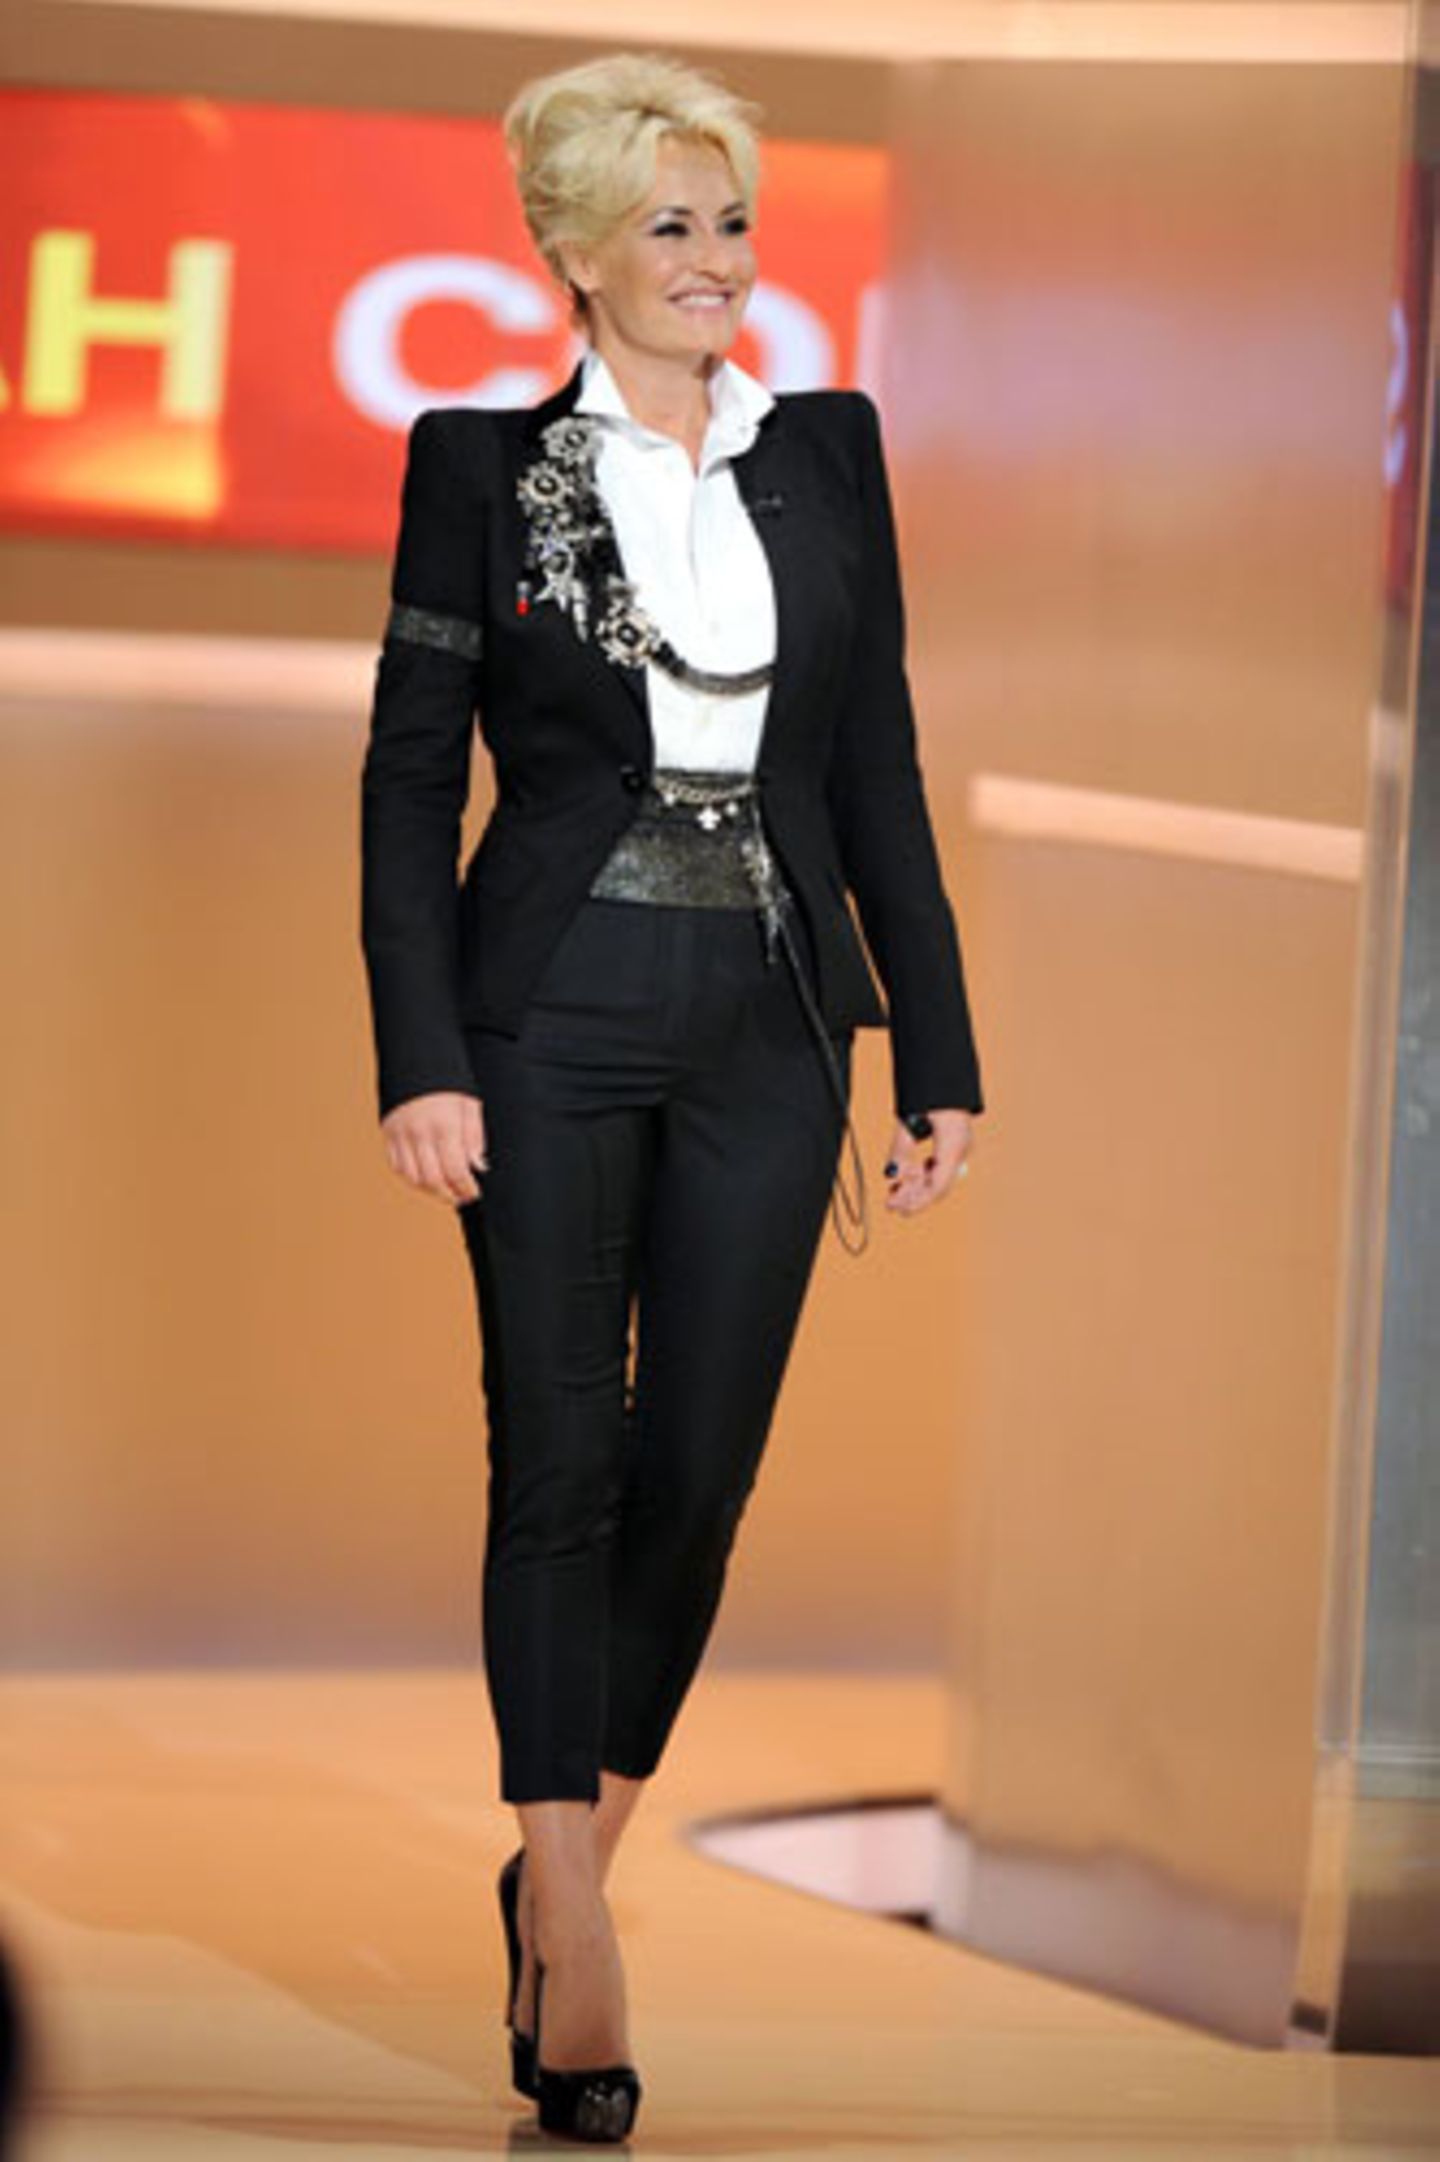 Sängerin Sarah Connor sah bei ihren Auftritten in "Wetten, dass ...?" immer gruselig aus - egal, ob sie wie hier ein hochgeschlossenes Outfit trug ...